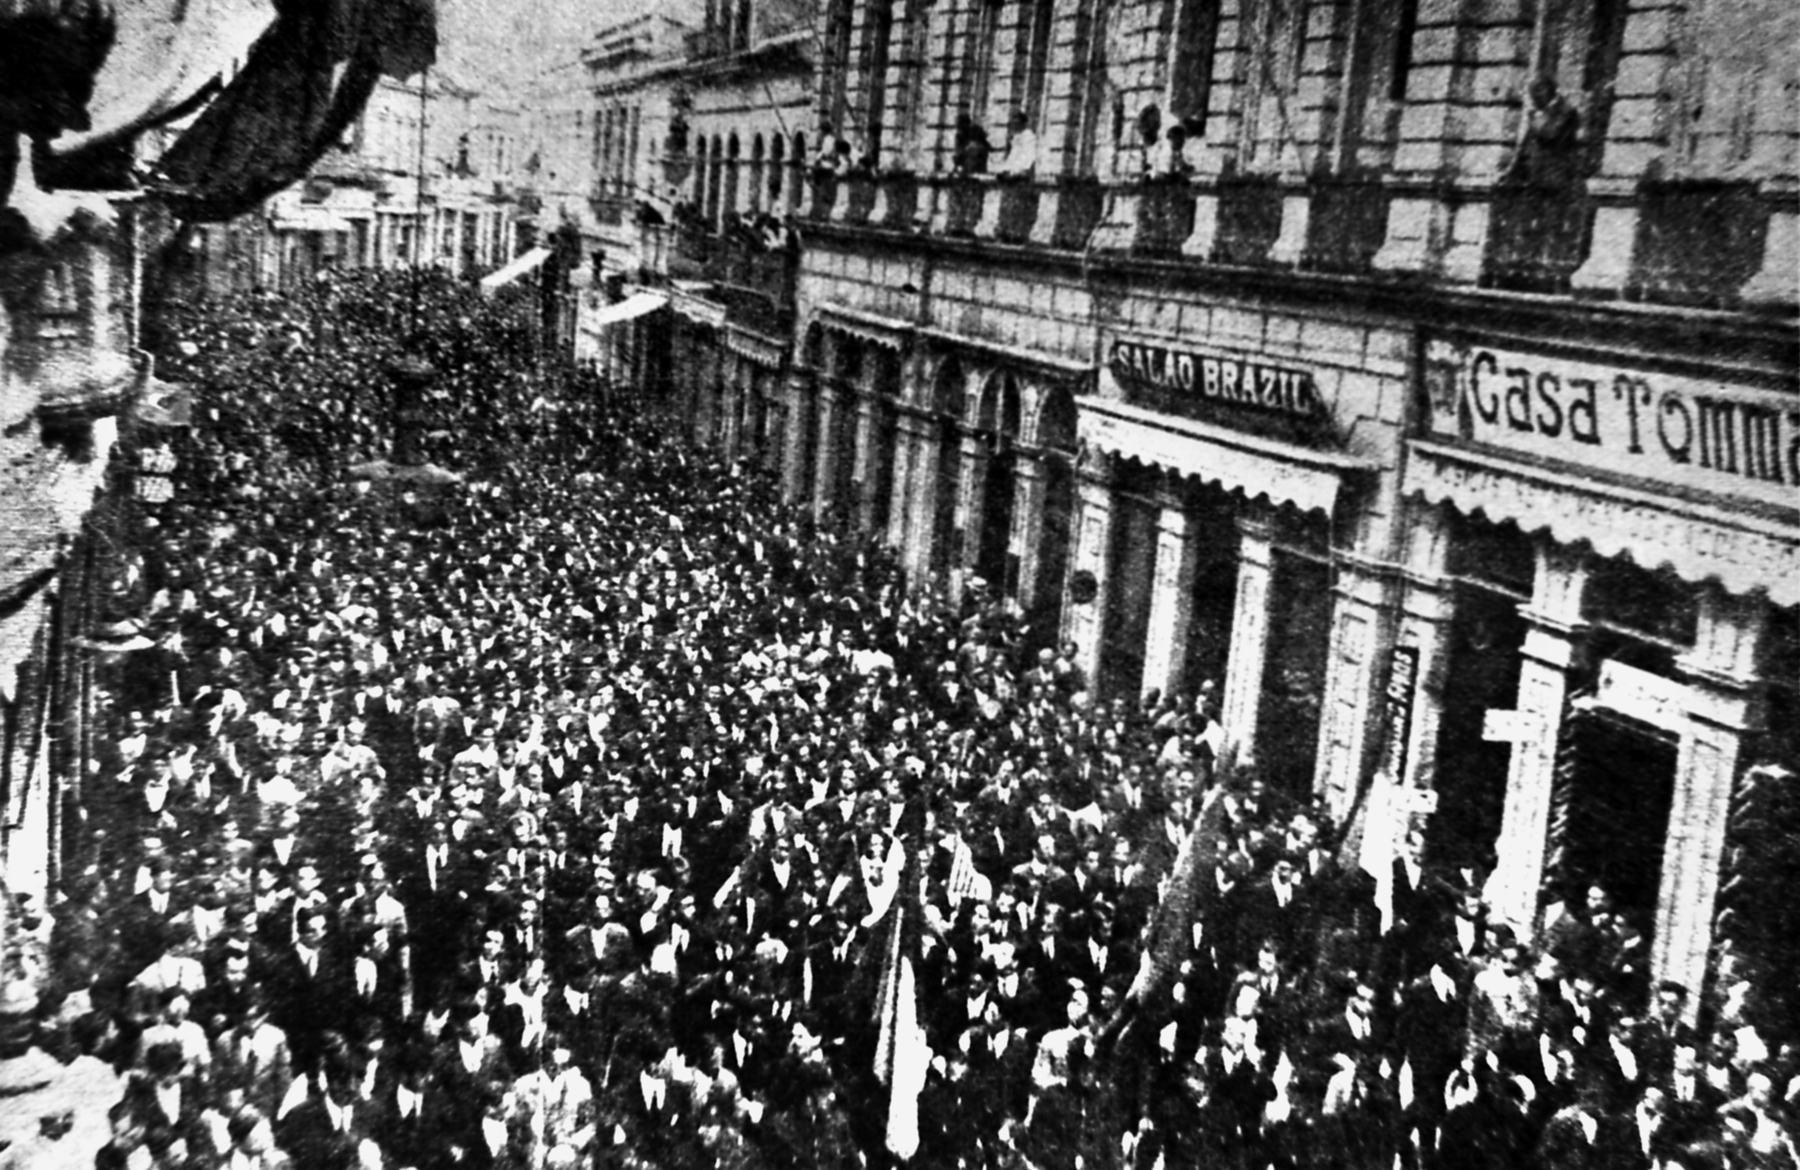 Fotografia em preto e branco. Multidão aglomerada na rua em um protesto. Nas laterais as entradas de prédios.